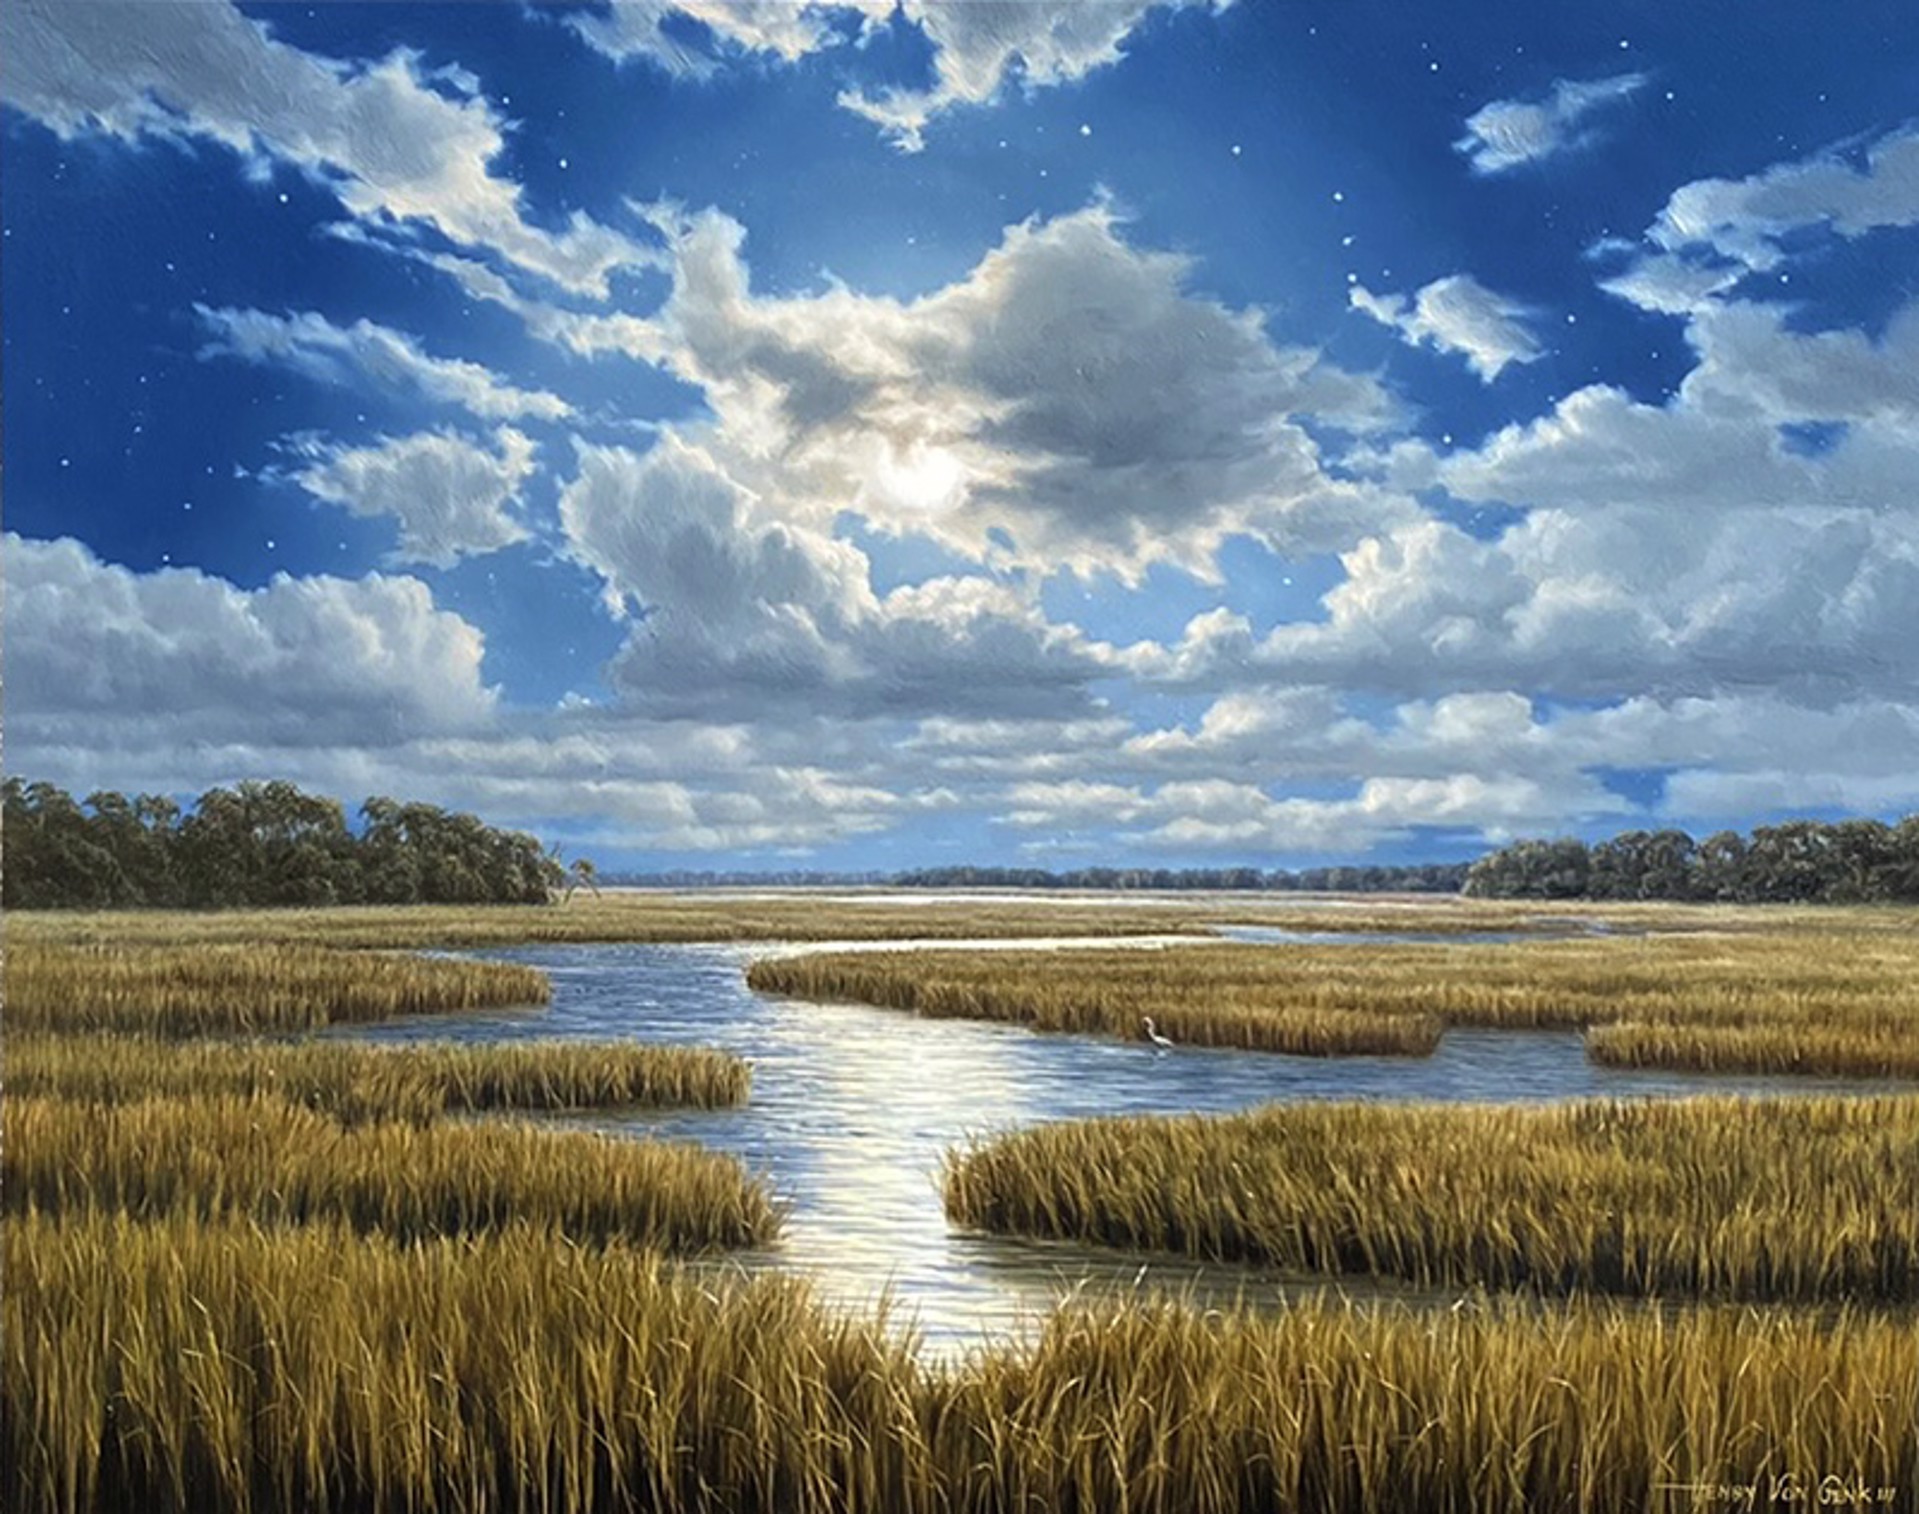 Moonlit Marsh by Henry Von Genk, III